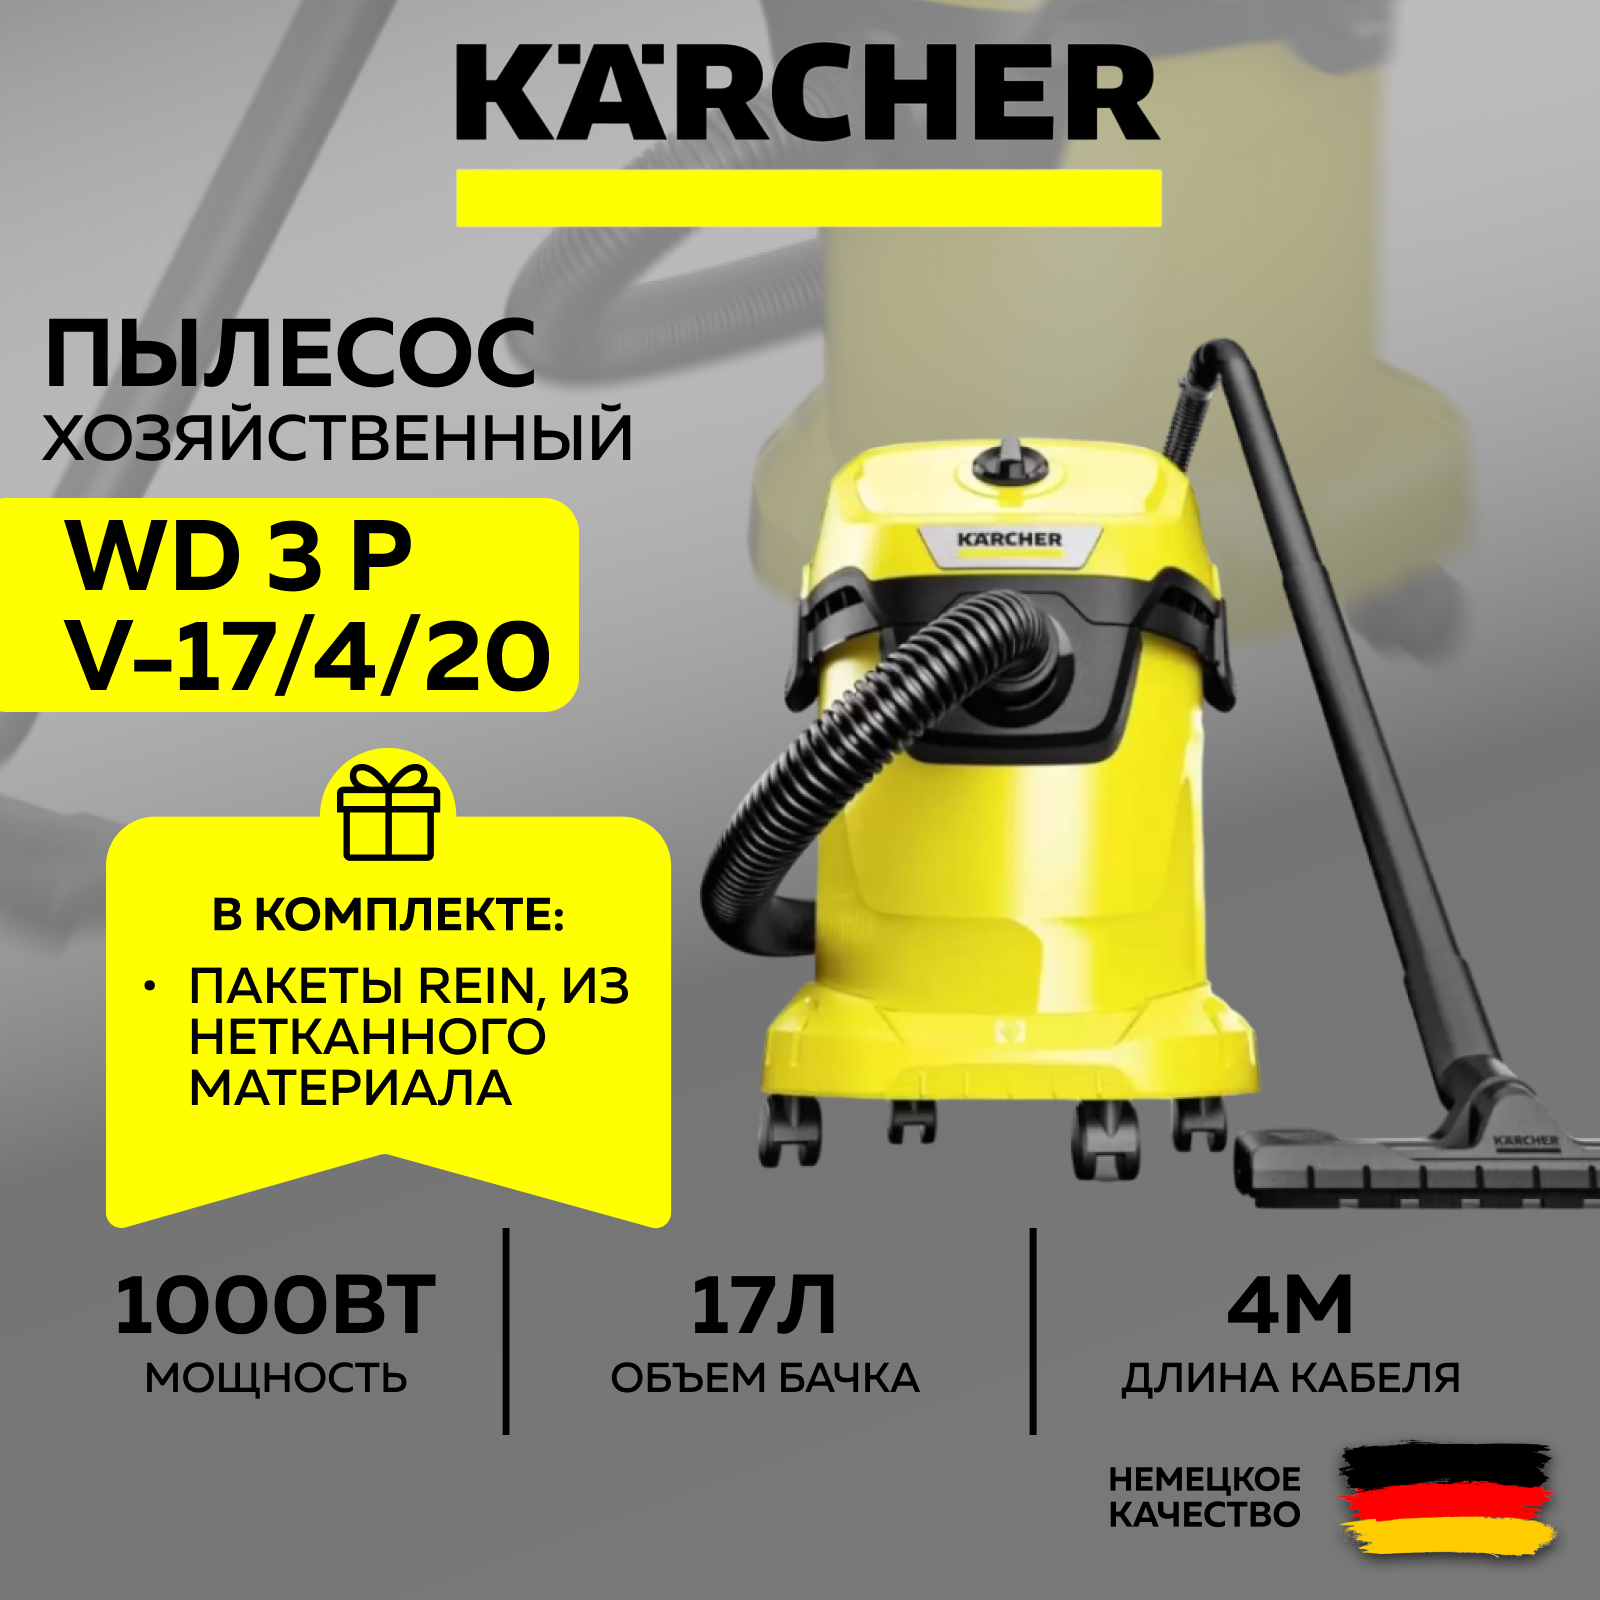 Хозяйственный пылесос Karcher WD 3 P V-17 4 20 (YYY) (1.628-170.0) + Фильтр-мешки (SET) пылесос karcher t 14 1 classic 1 527 170 0